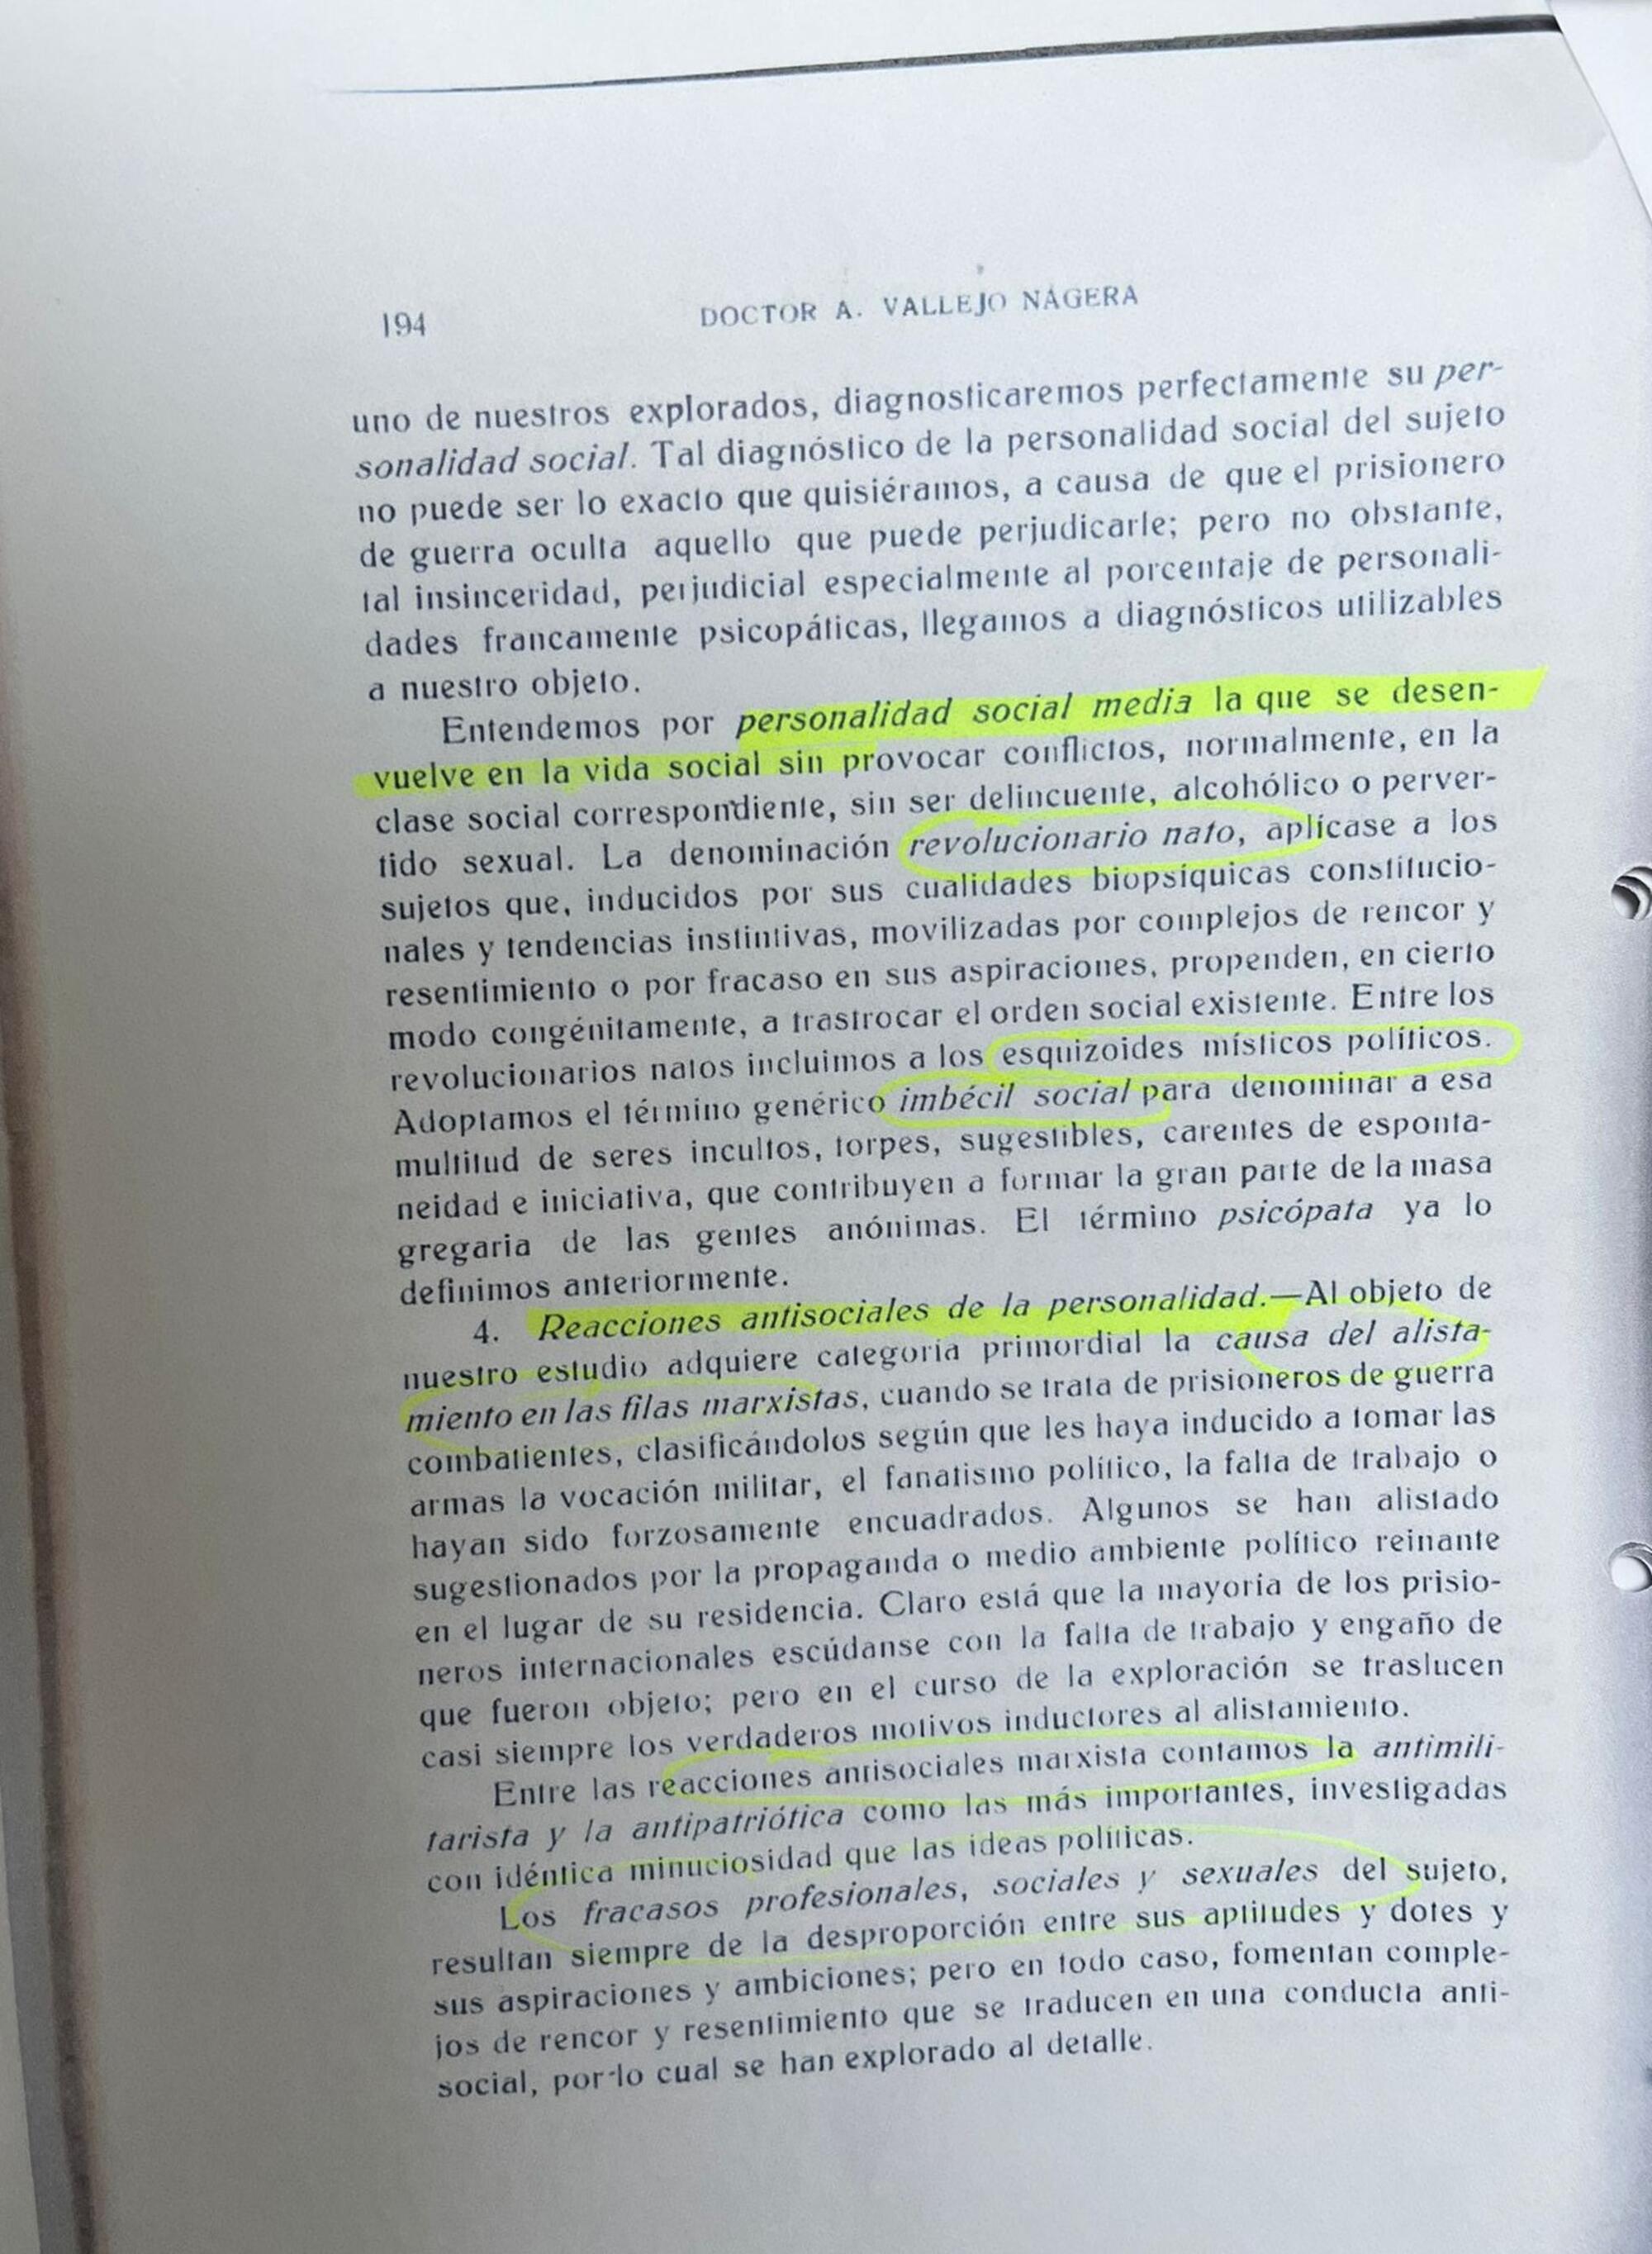 “Biopsiquismo del Fanatismo Marxista”, por el Dr. Vallejo Nágera. Documentos aportados por Ana Mancho